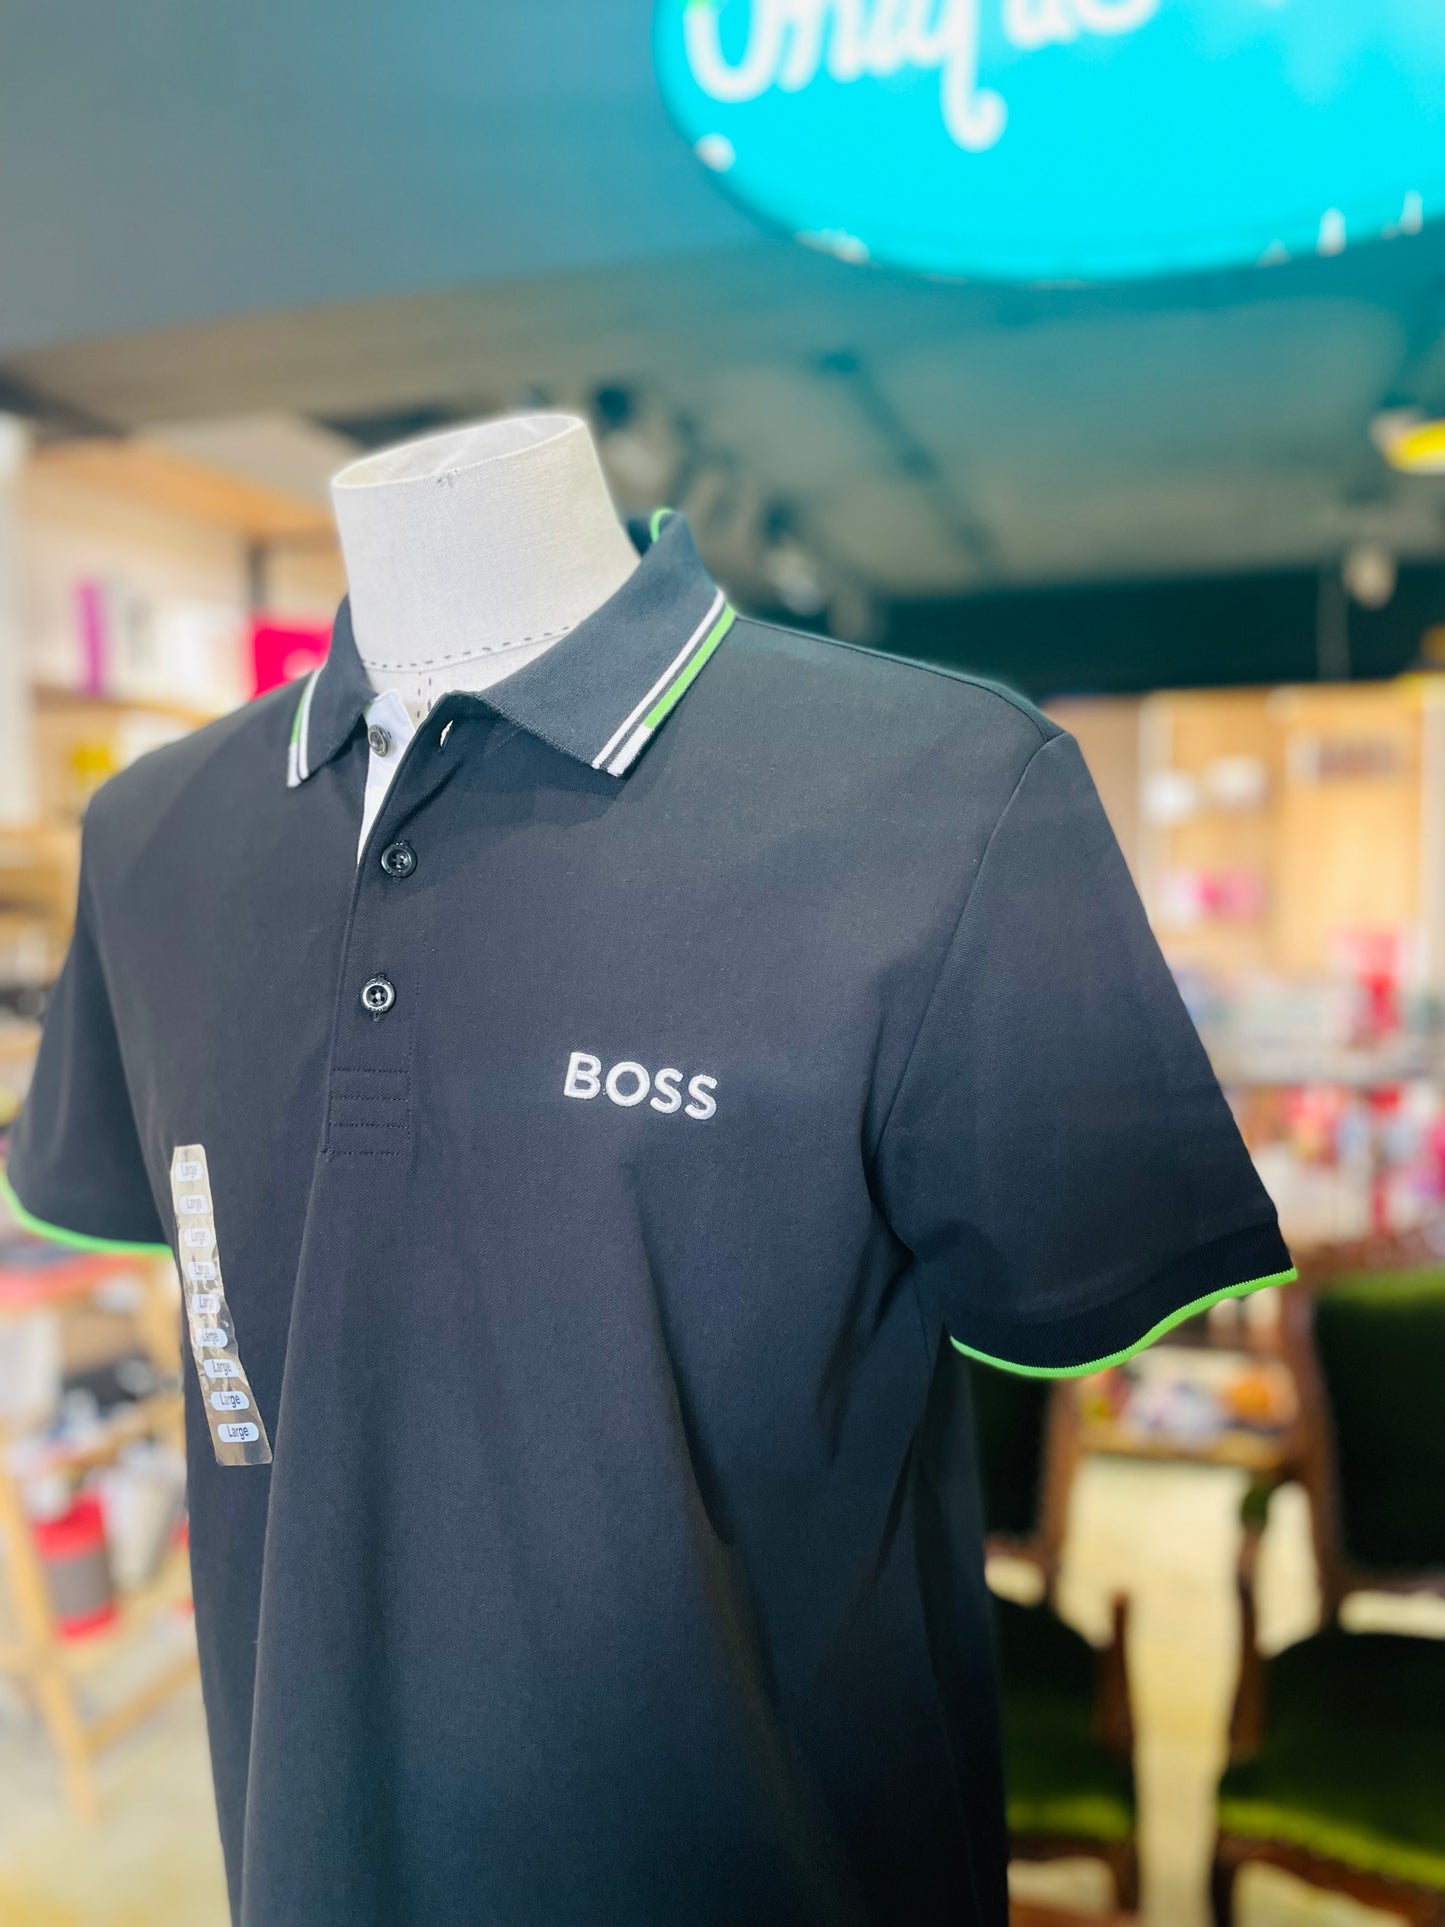 Boss men’s shirt